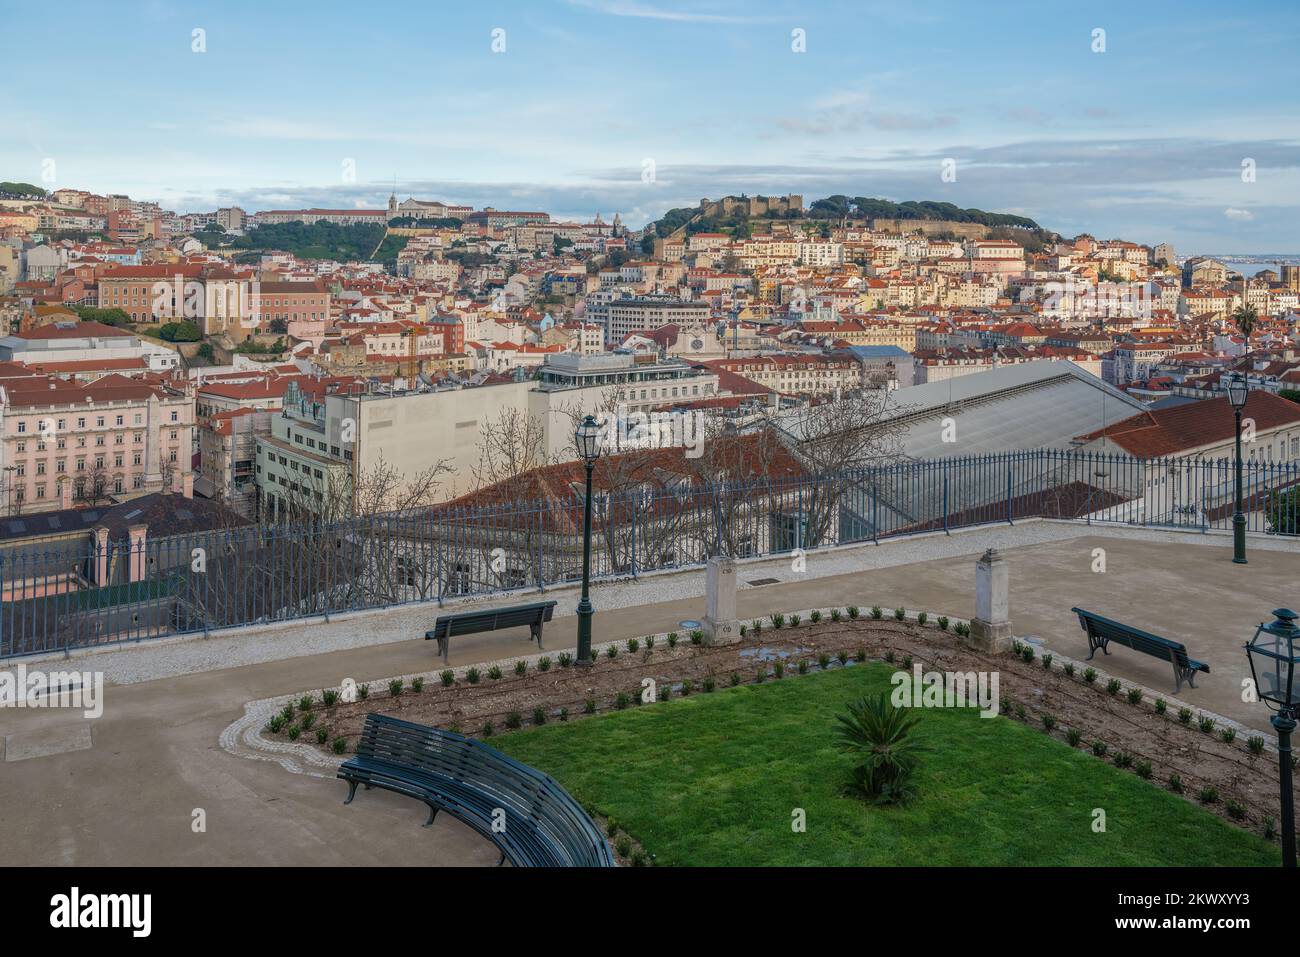 Miradouro Sao Pedro de Alcantara Aussichtspunkt und Luftaufnahme der Stadt Lissabon und der Burg Saint George - Lissabon, Portugal Stockfoto